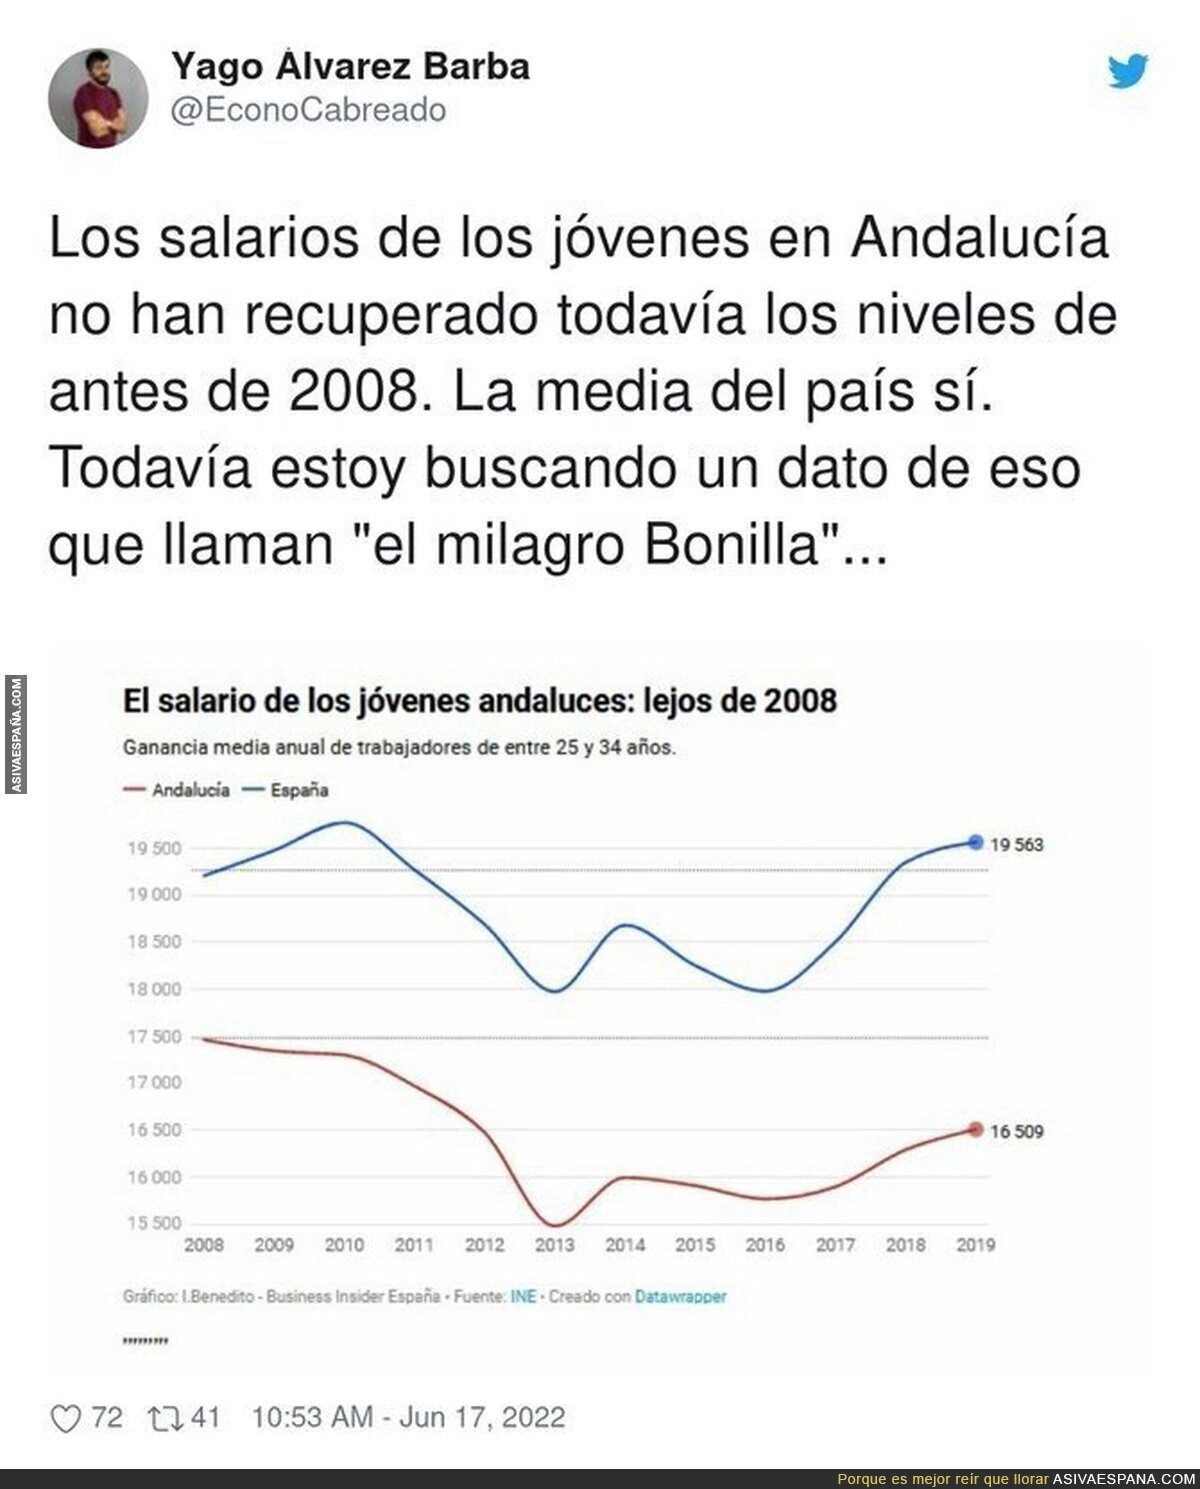 El salario de los jóvenes españoles y el de los andaluces